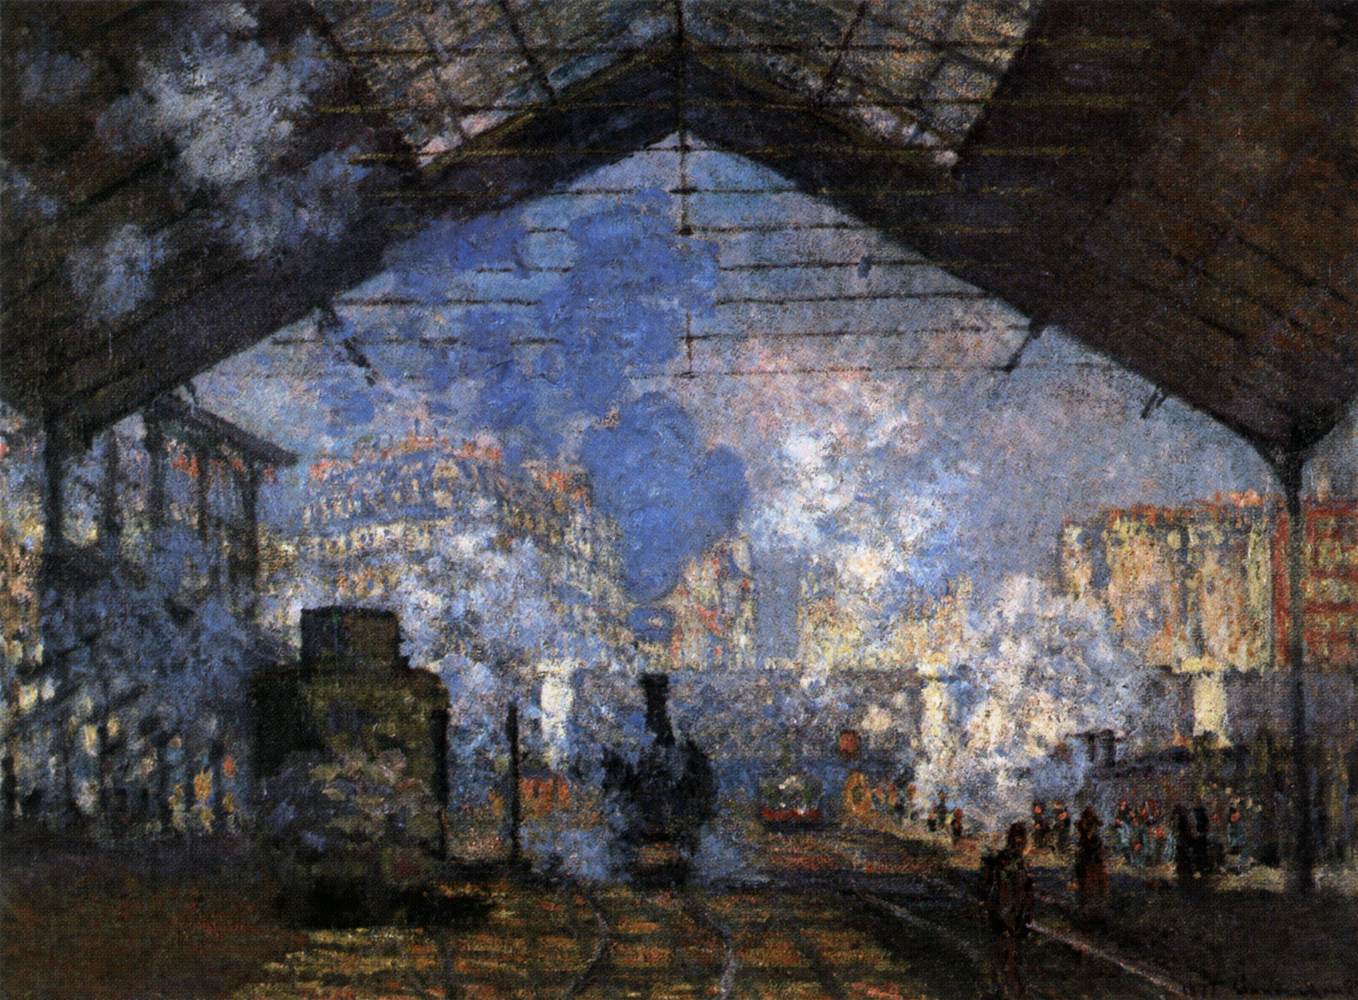 Station Saint-Lazare by Claude Monet - 1877 - 76 x 104 cm 